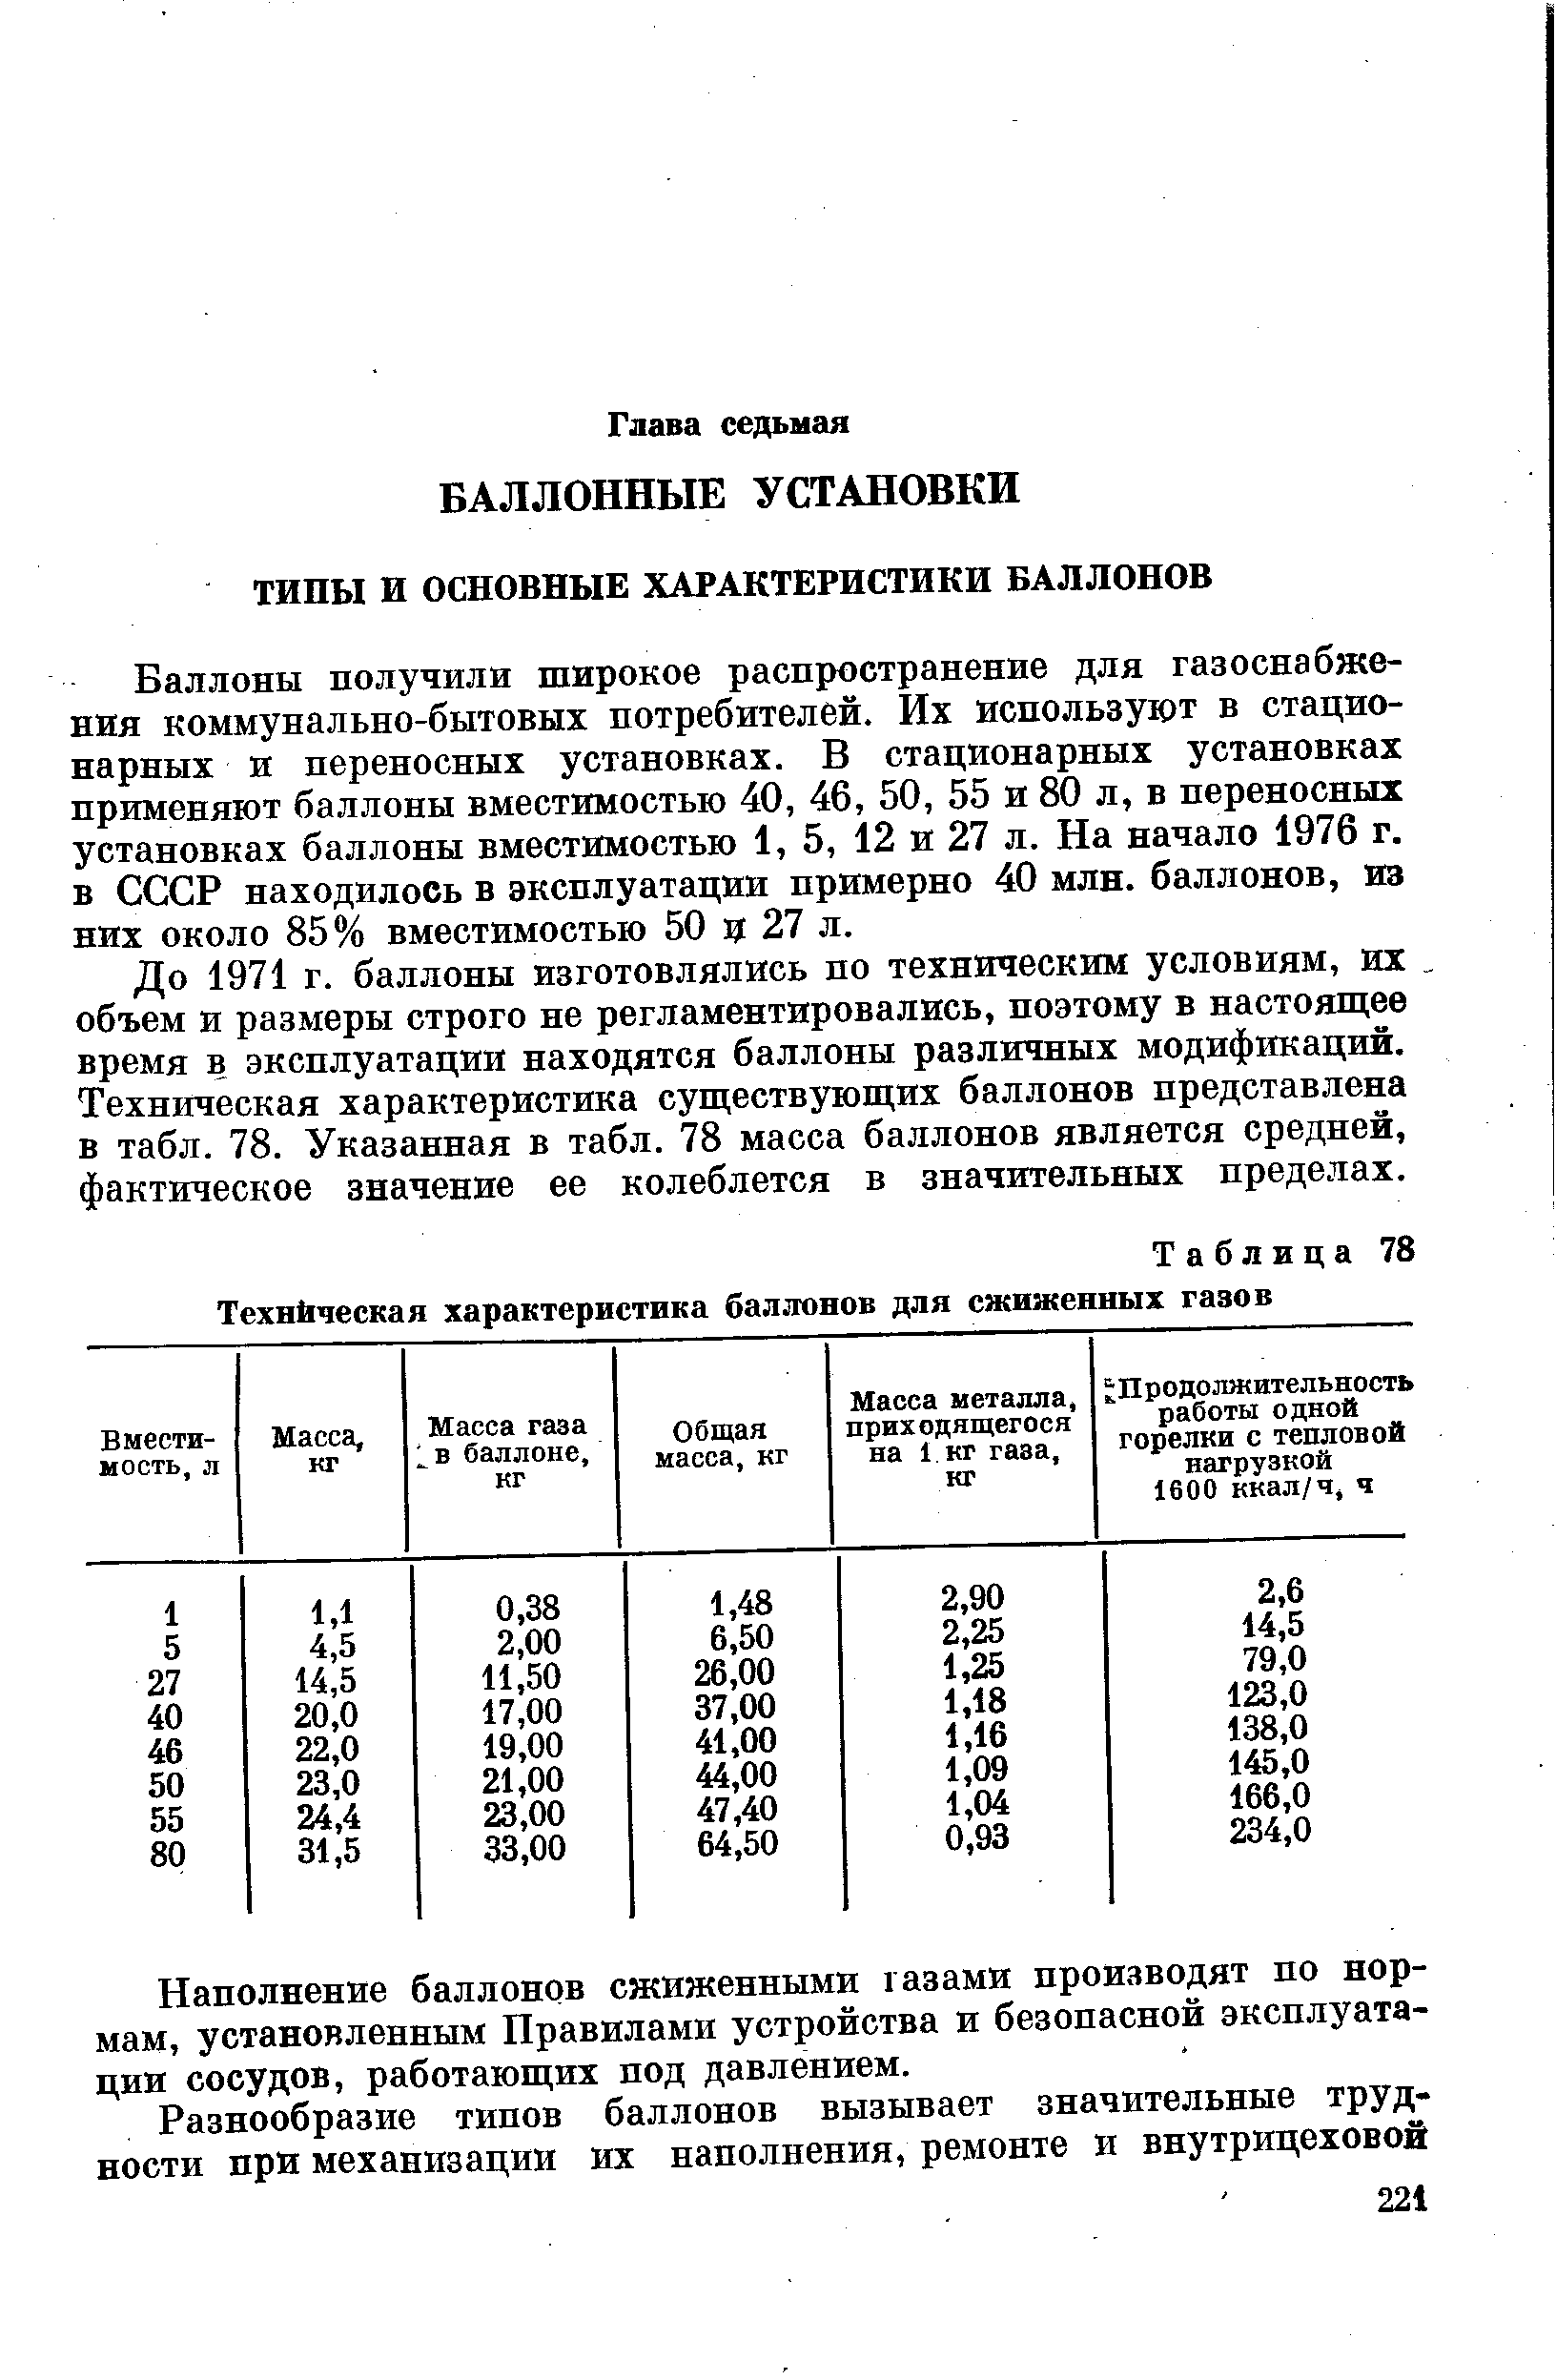 Баллоны получили широкое распространение для газоснабжения коммунально-бытовых потребителей. Их используют в стационарных и переносных установках. В стационарных установках применяют баллоны вместимостью 40, 46, 50, 55 и 80 л, в переносных установках баллоны вместимостью 1, 5, 12 и 27 л. На начало 1976 г. в СССР находилось в эксплуатации примерно 40 млн. баллонов, из них около 85% вместимостью 50 ц 27 л.